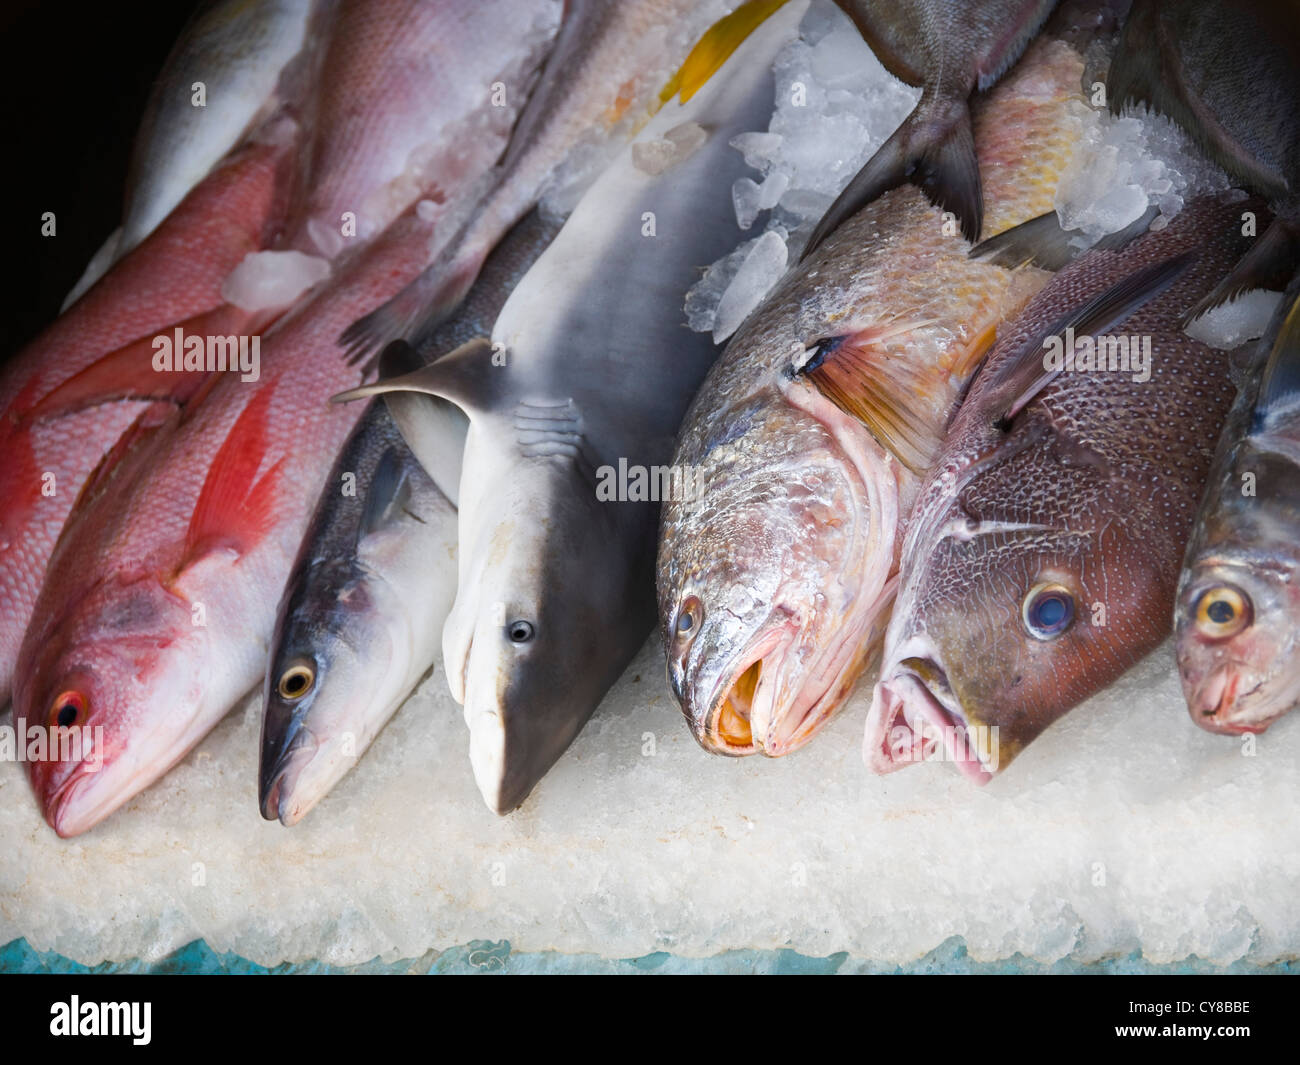 Horizontale Ansicht von verschiedenen Fischarten, die auf einem feuchten Markt in Indien verkauft werden. Stockfoto